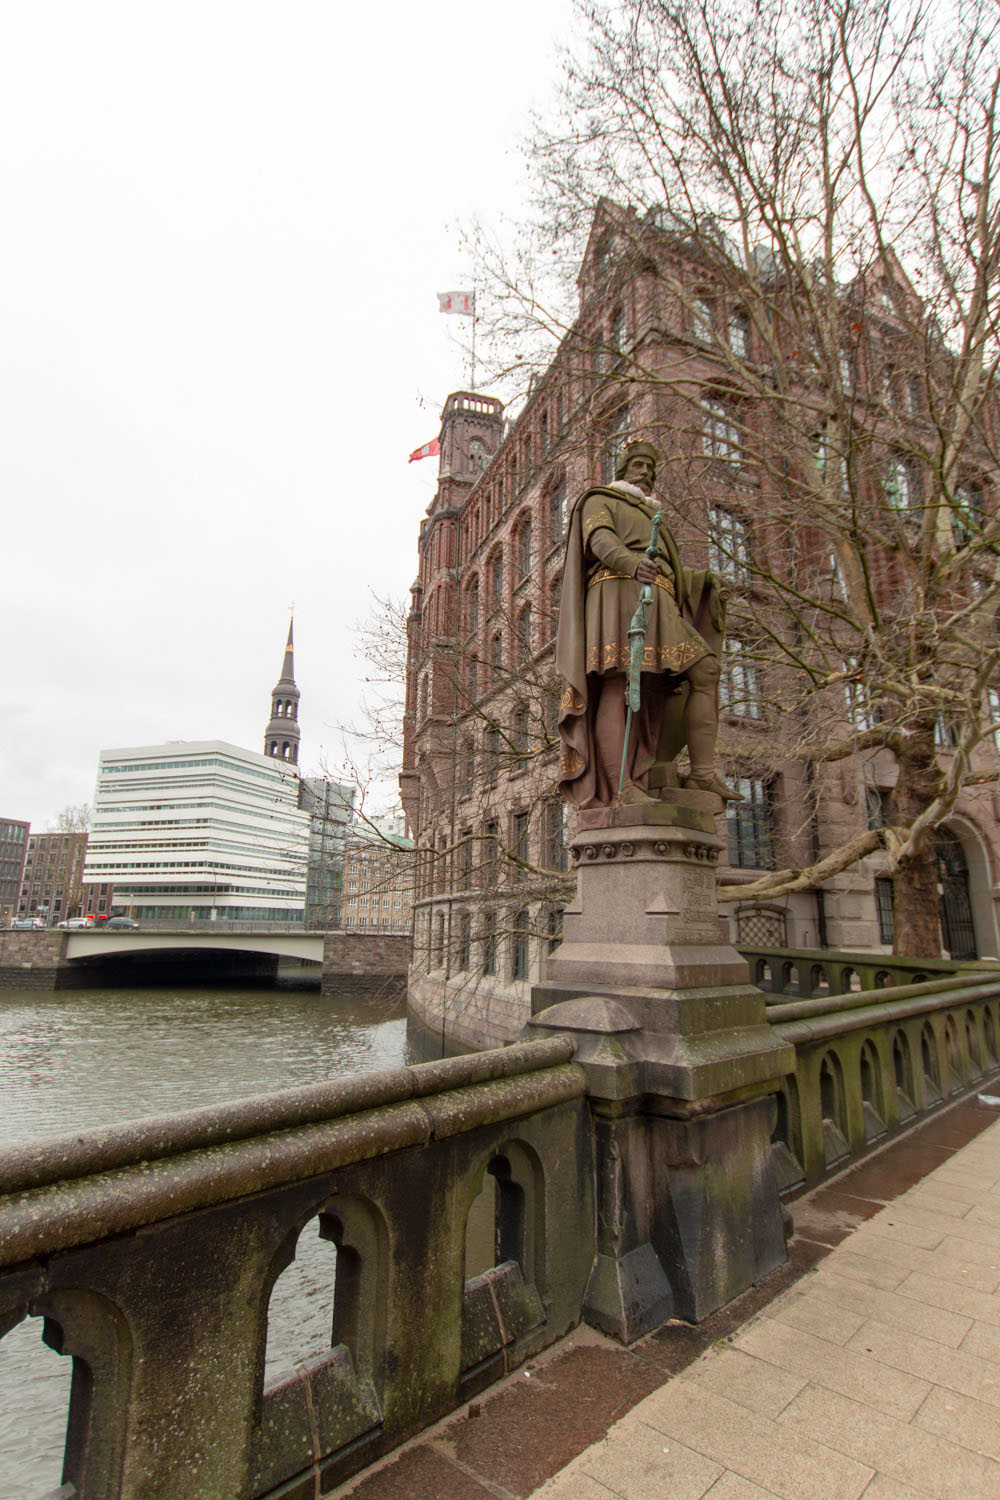 Statue des Sachsenherzogs Graf Adolf III. von Schauenburg auf der Trostbrücke